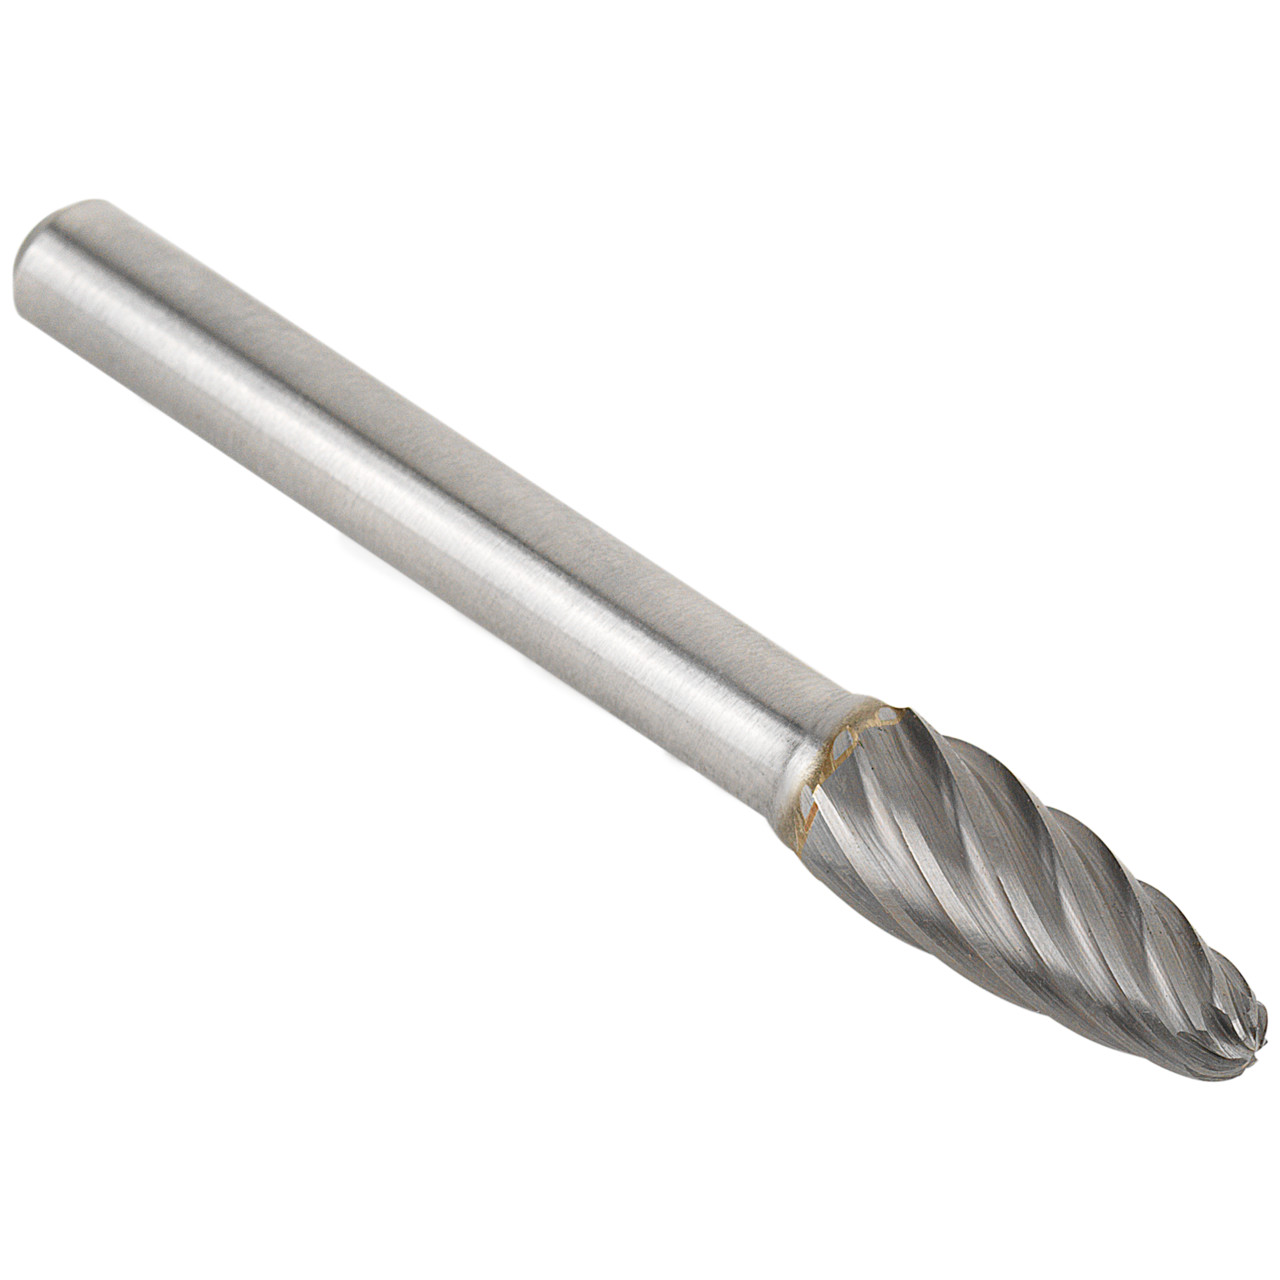 Tyrolit Hardmetalen frees DxT-SxL 6x18-6x50 Voor roestvrij staal, vorm: 52RBF - boom, Art. 34213624